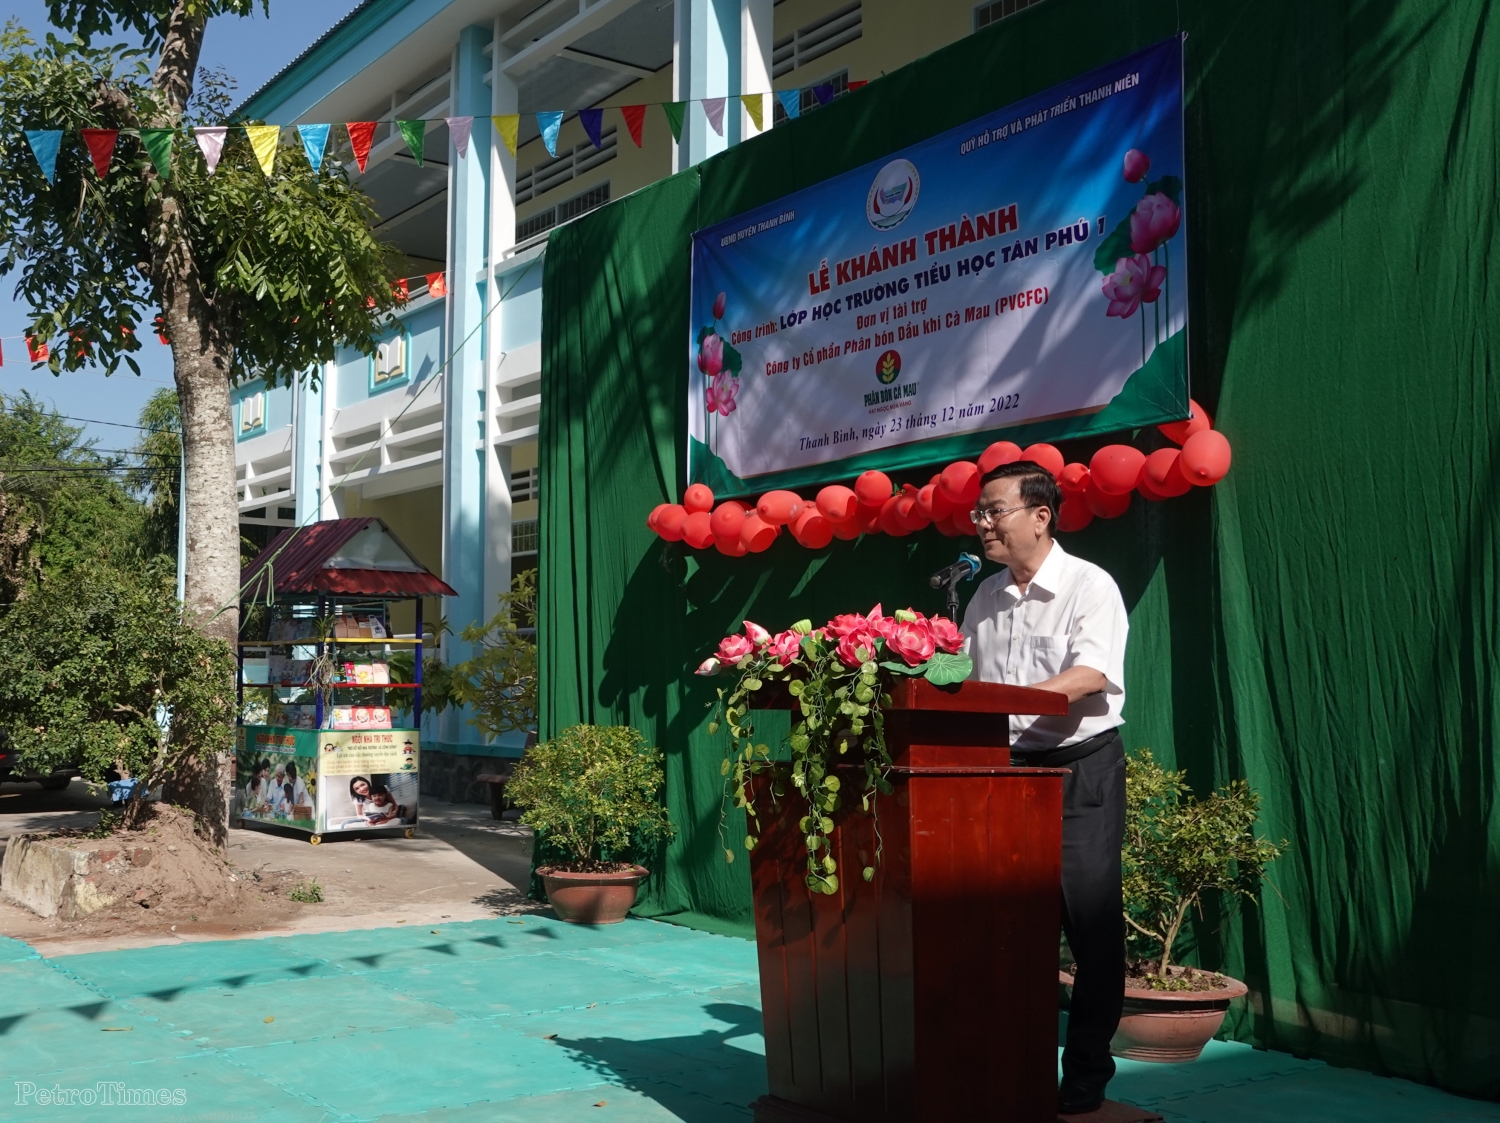 Phân bón Cà Mau khánh thành thêm 06 phòng học mới tại Đồng Tháp